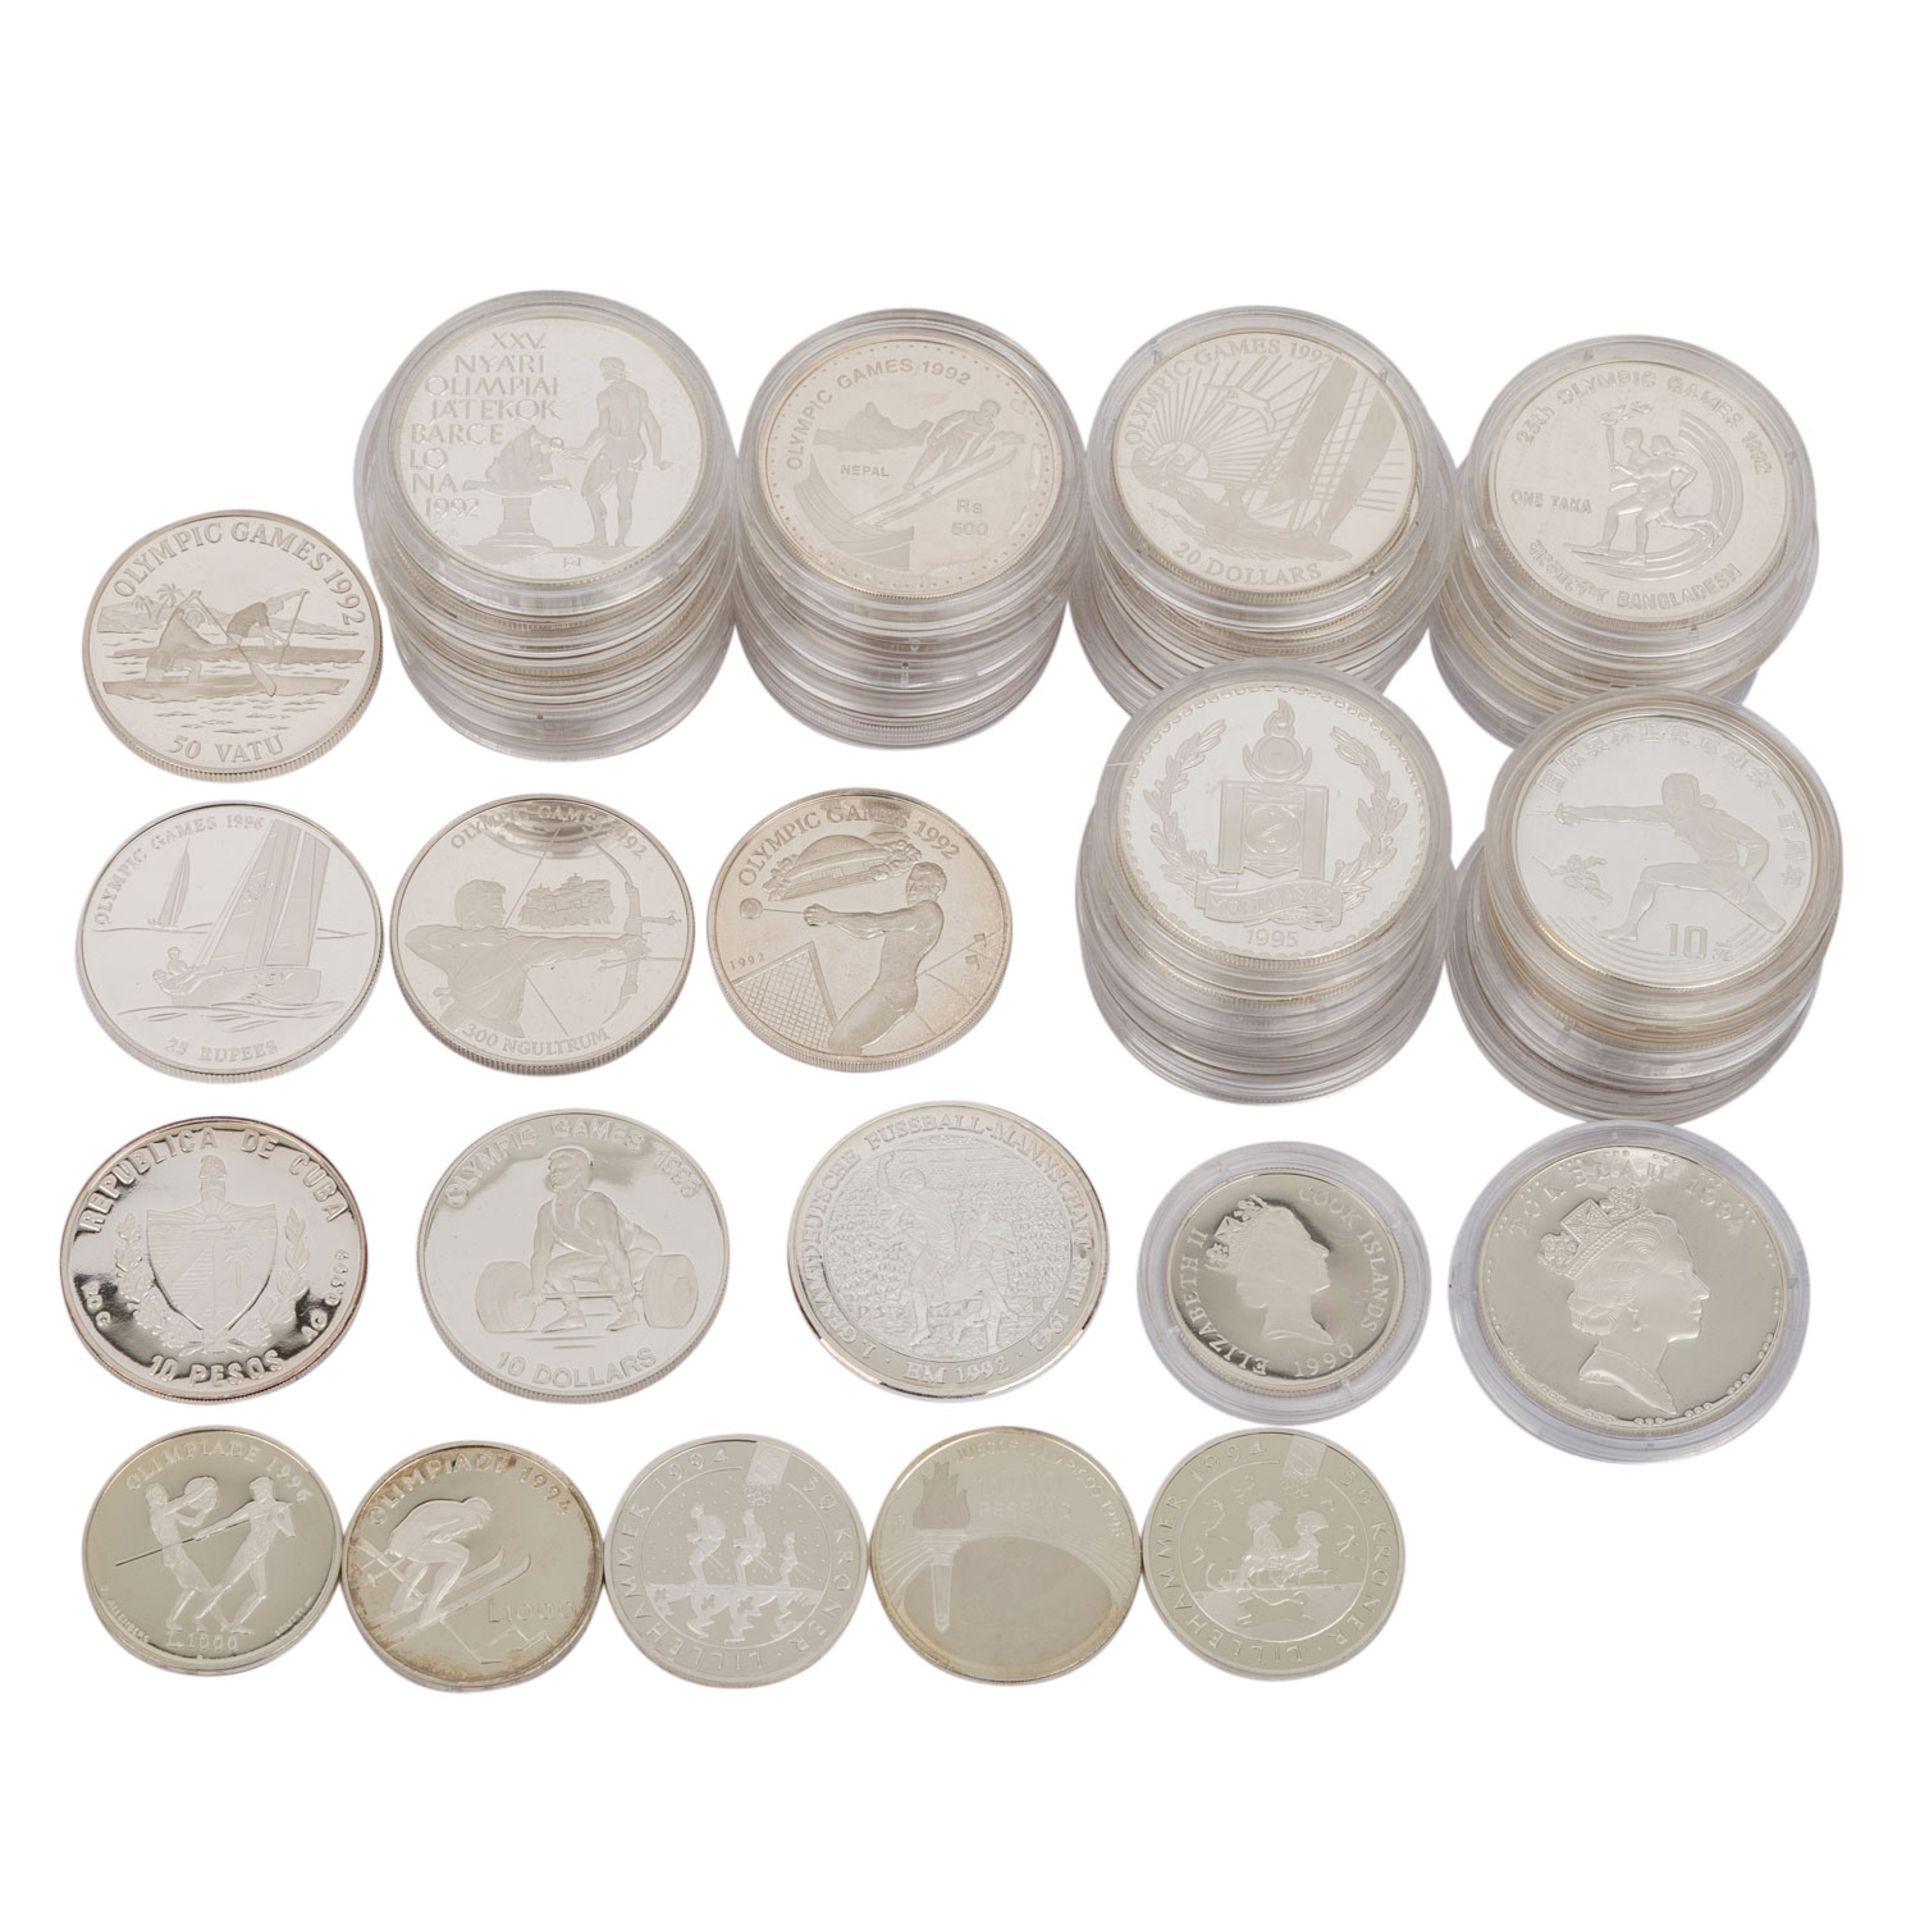 Silber / Olympische Spiele - 44 Münzen mit Bezug auf Olympische Spiele,unterschiedlich erhalten,